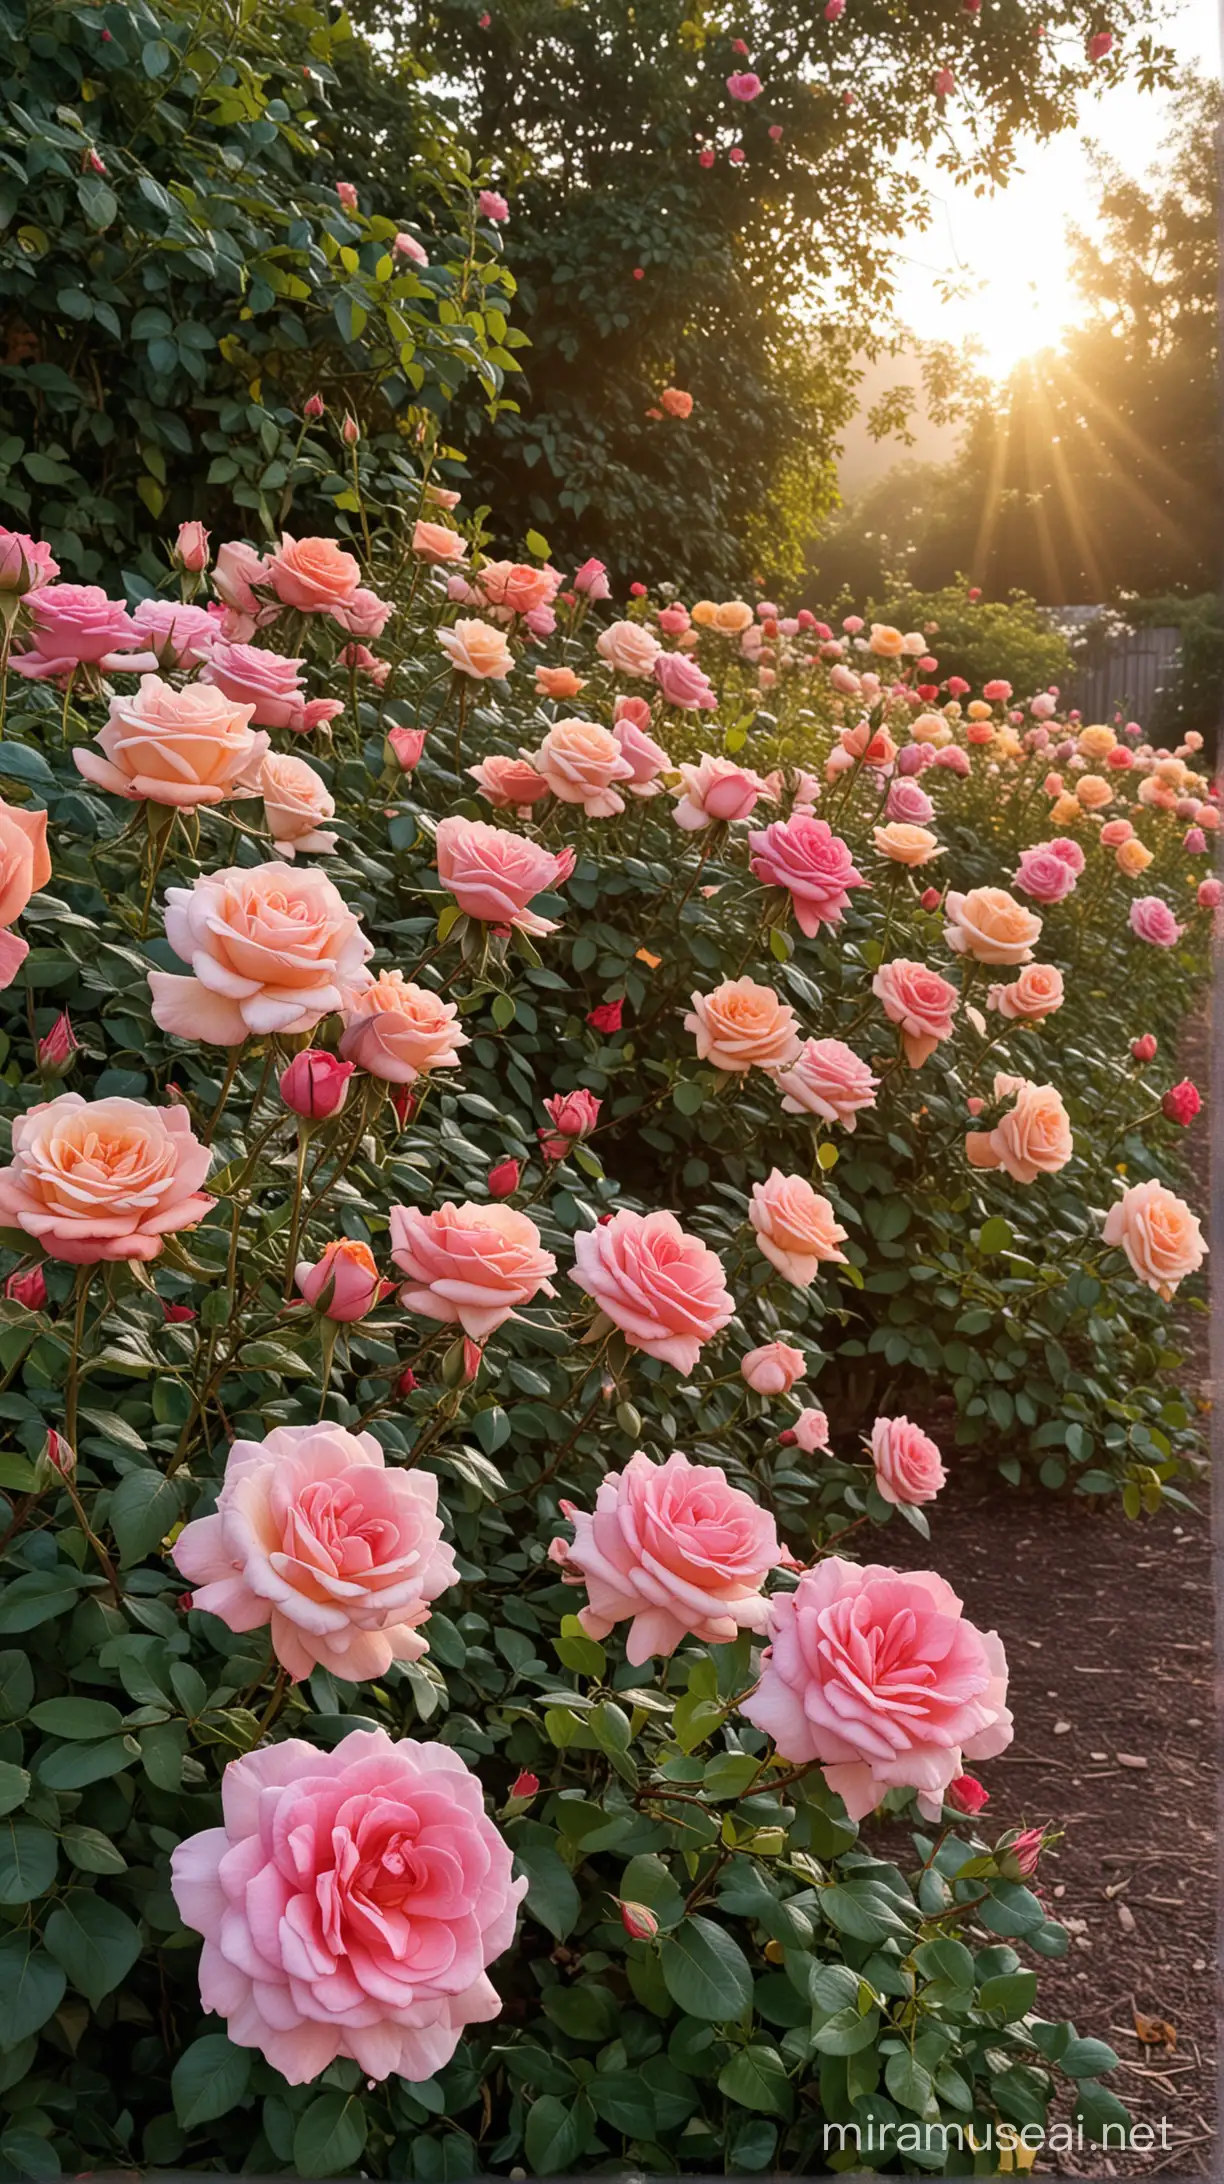 Vibrant Sunrise Over a Lush Rose Garden